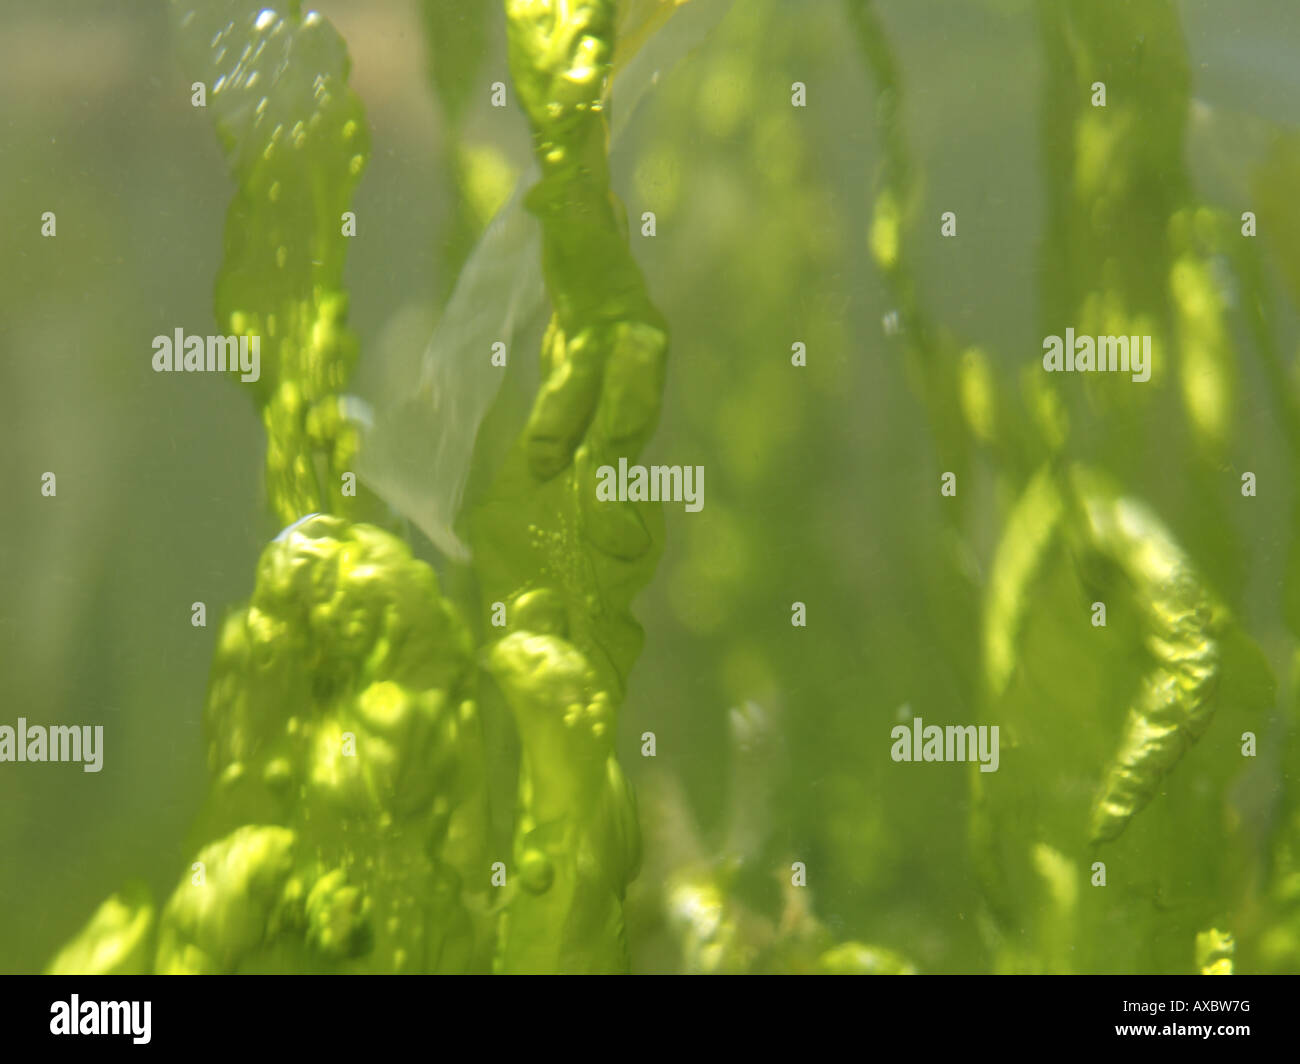 Enteromorpha, green alga, green seaweed (Enteromorpha spec.), detail of the thalli Stock Photo